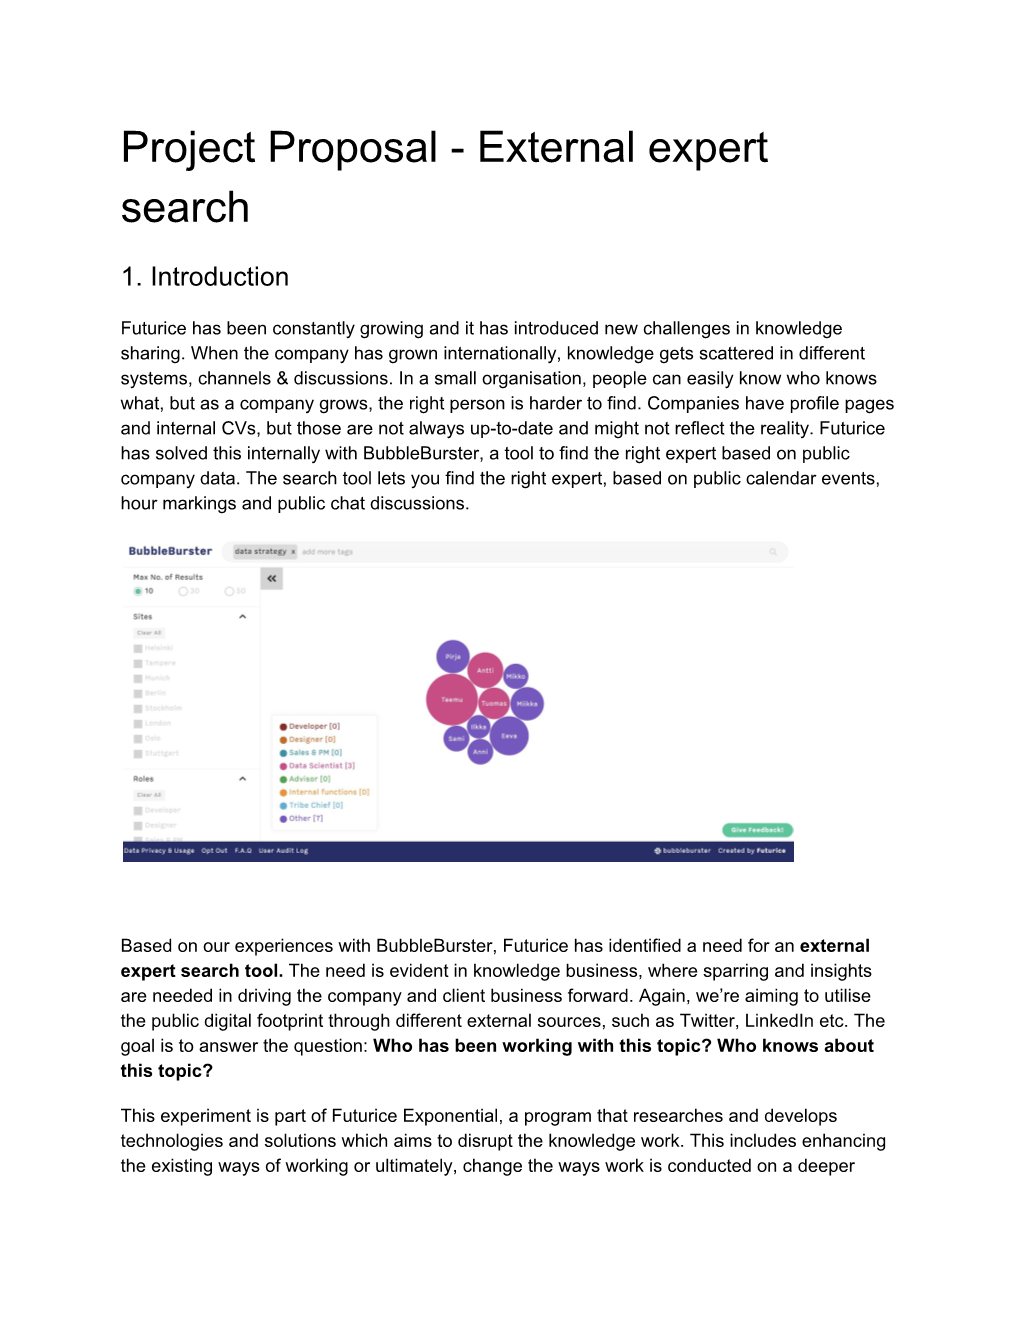 External Expert Search